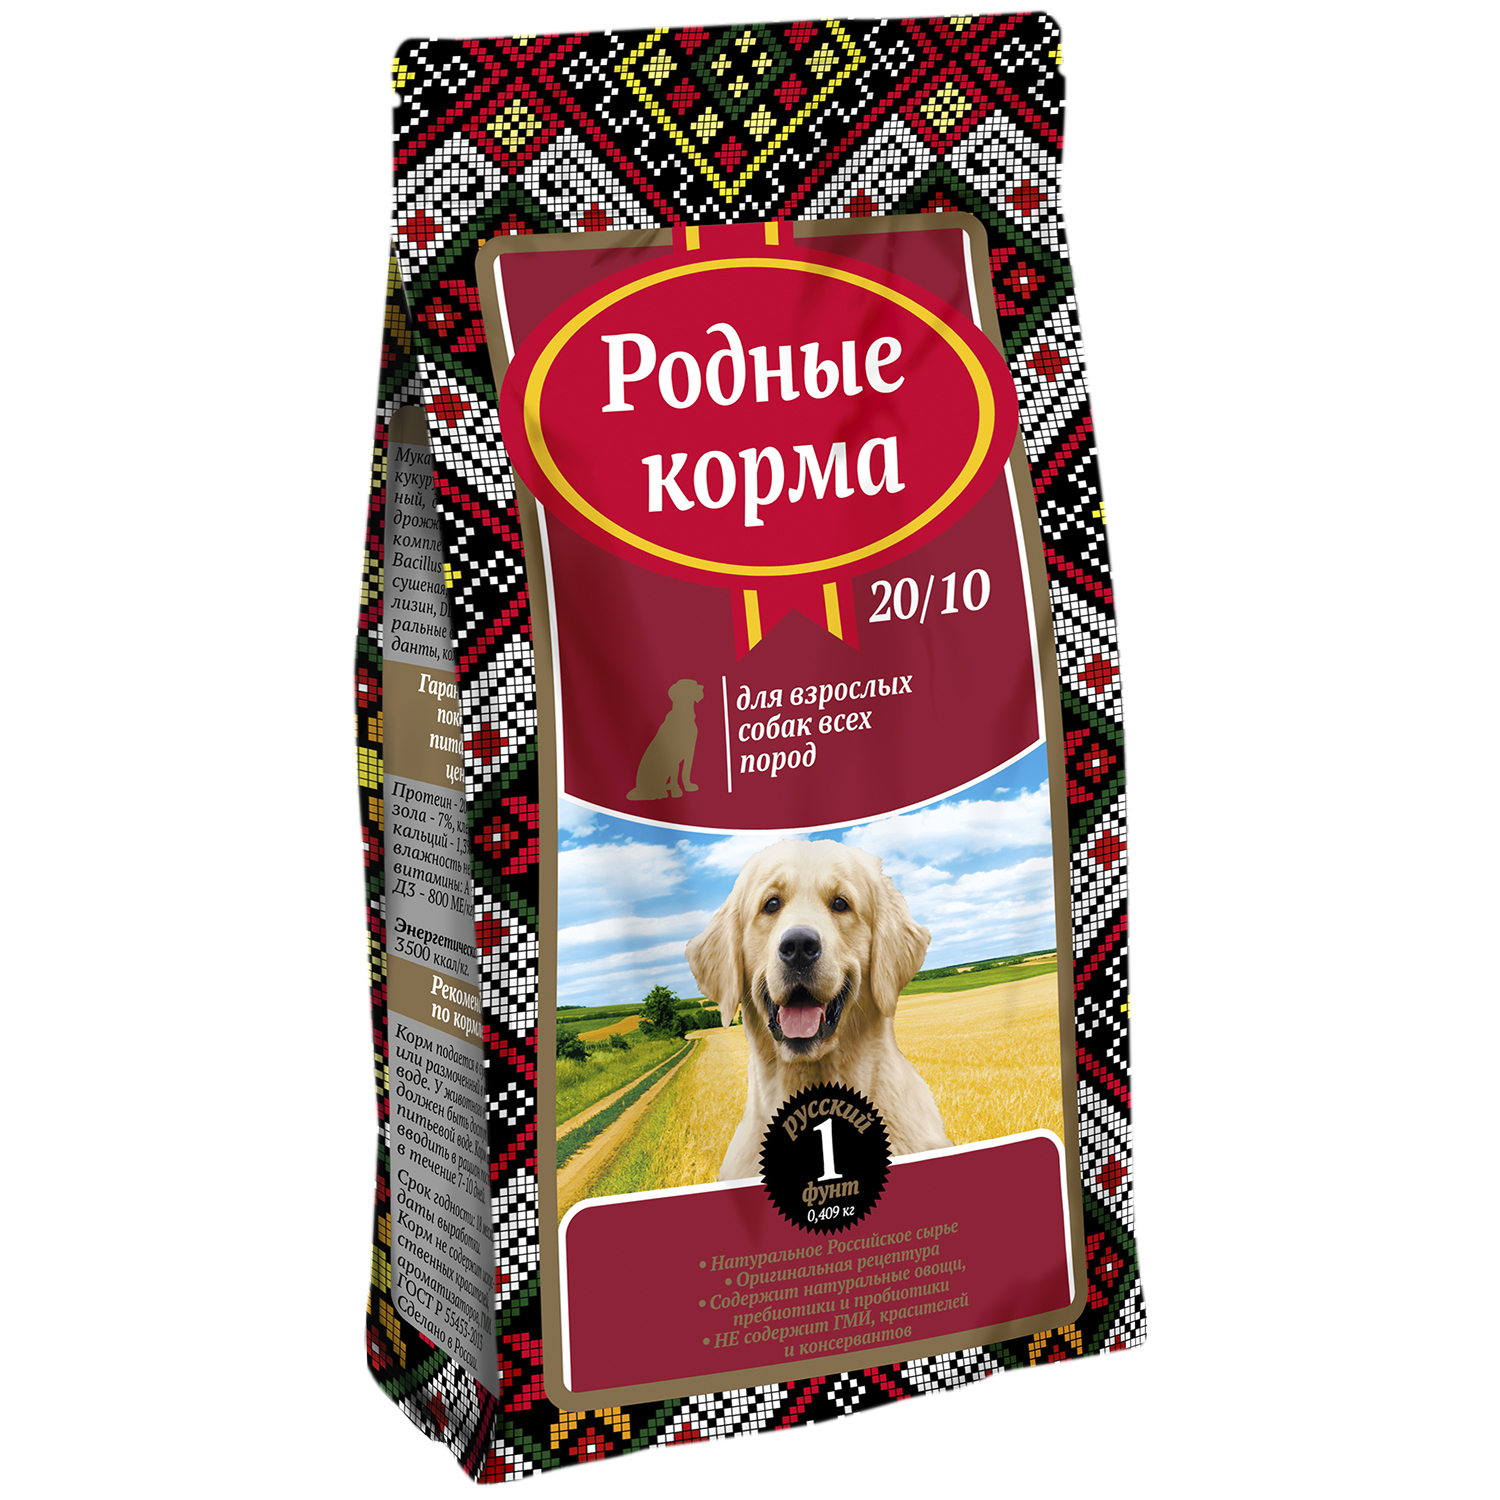 Родные корма сухой корм для собак. Сухой корм для собак родные корма. Родные корма для собак сухой 16 кг. Русские просторы корм для собак. Родные корма для взрослых собак.